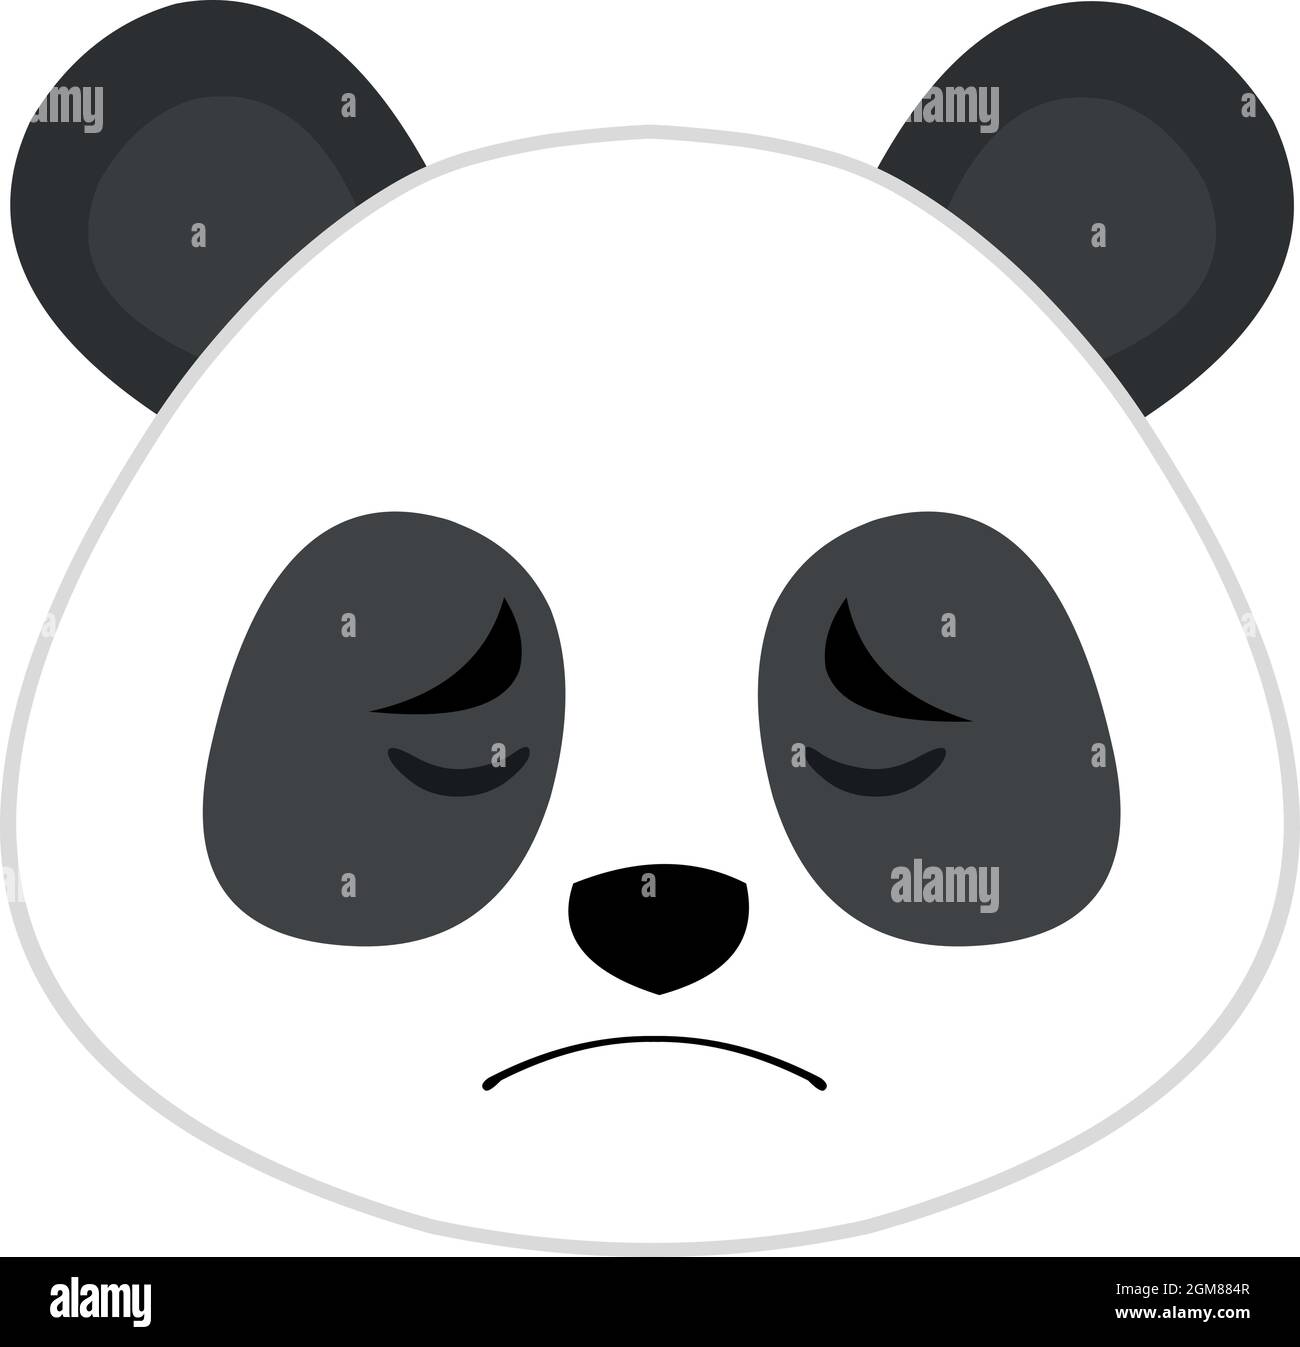 Illustrazione di un'emoticon vettoriale del volto di un panda cartoon con un'espressione triste Illustrazione Vettoriale